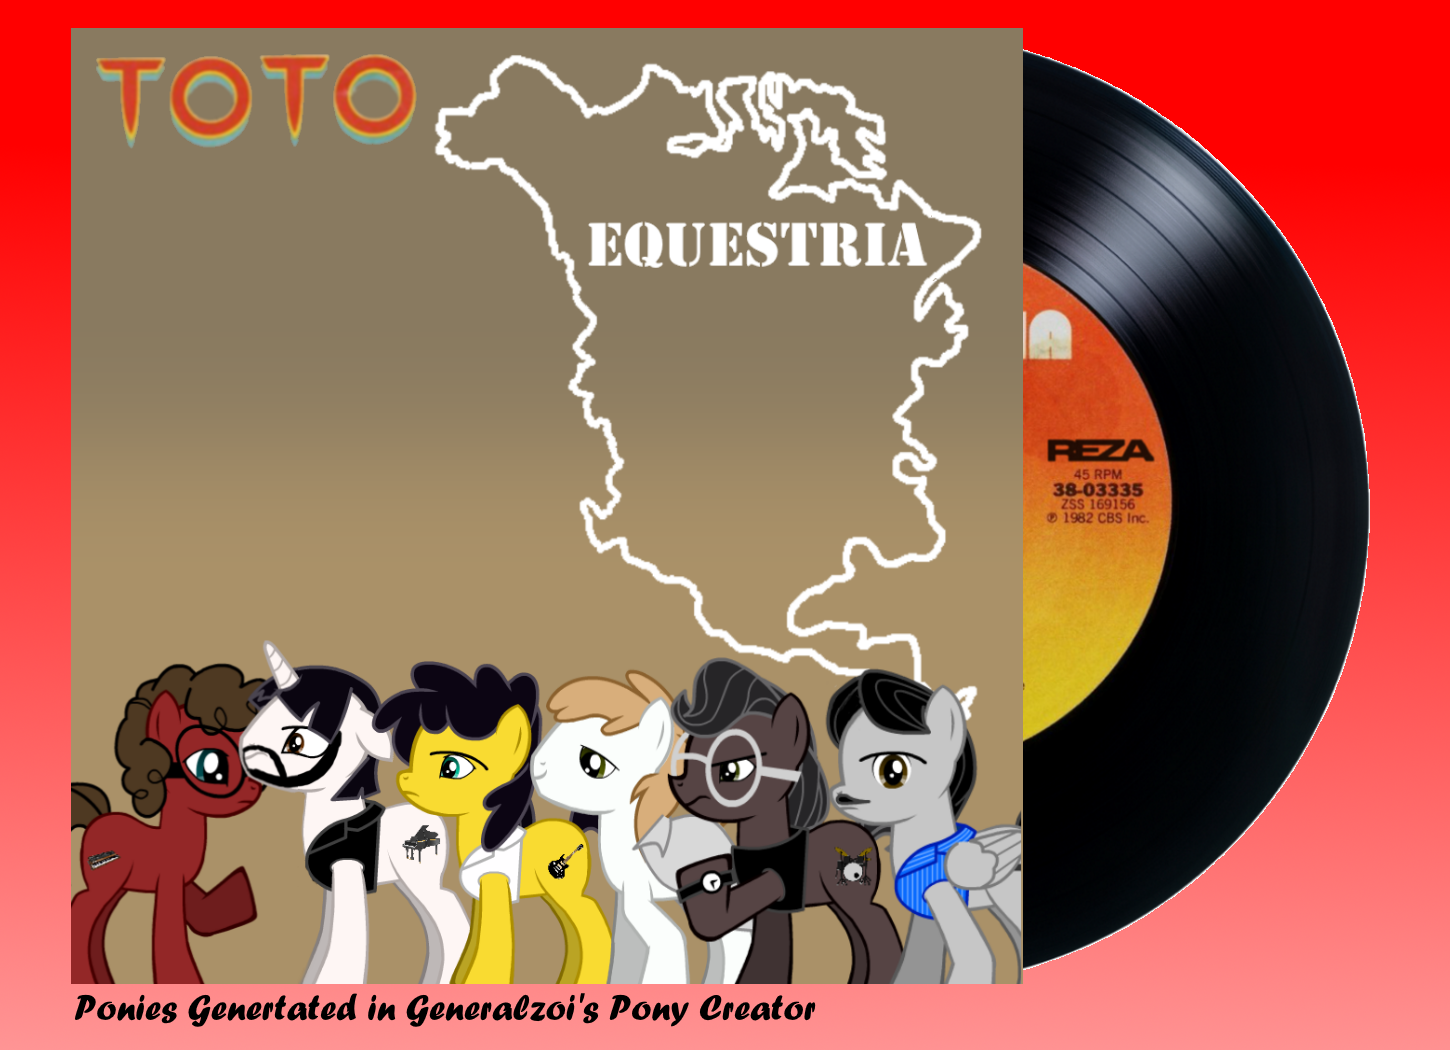 Toto - Equestria box cover